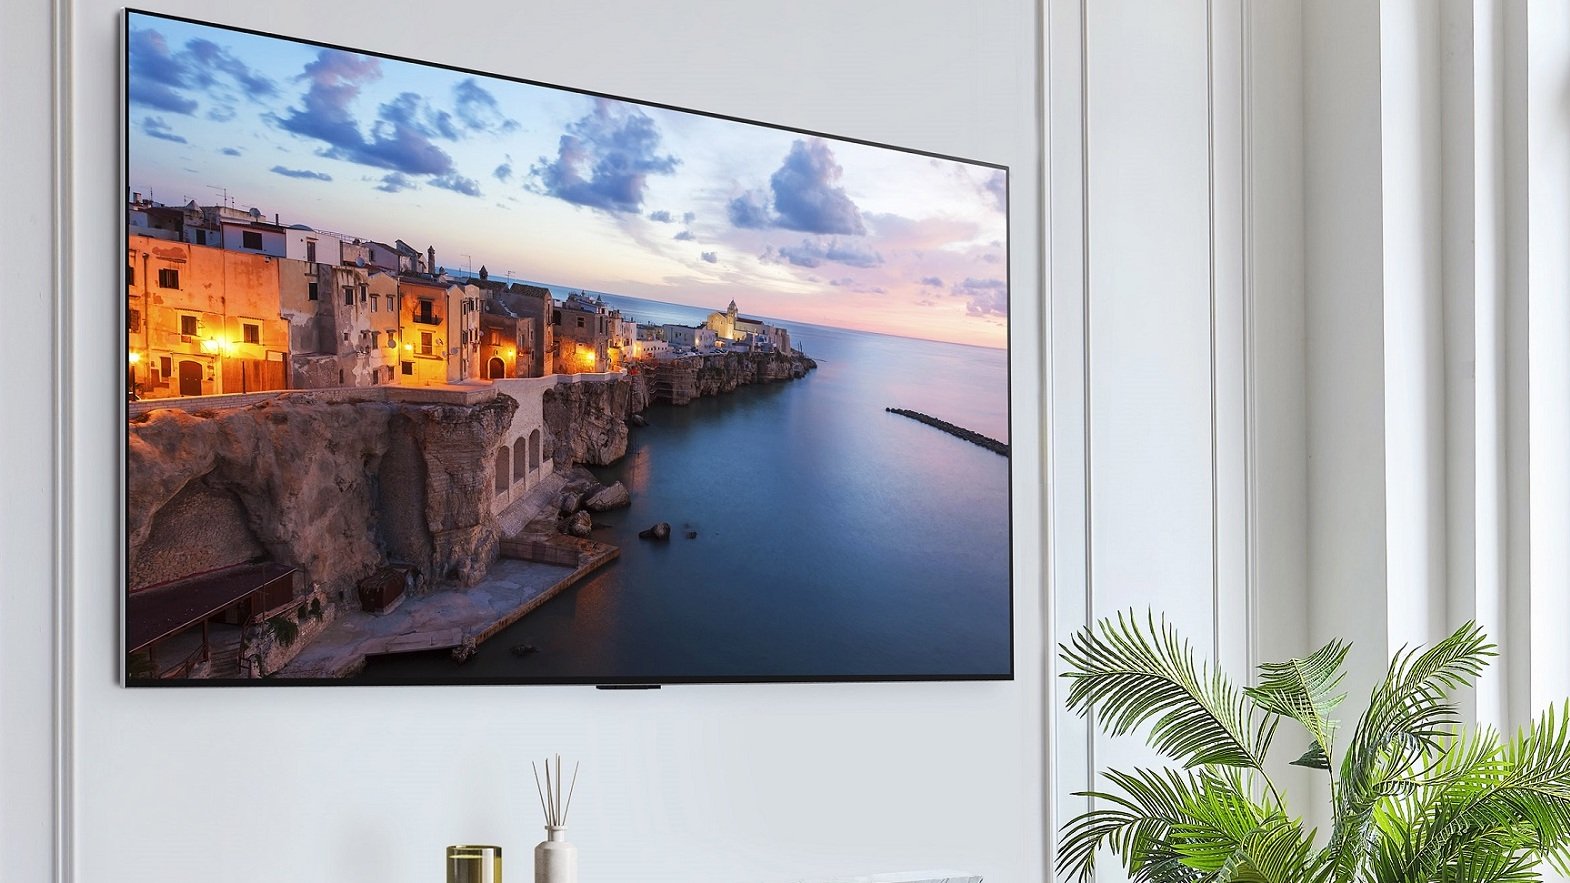 Панельный OLED-телевизор LG G3 висит на стене в гостиной.